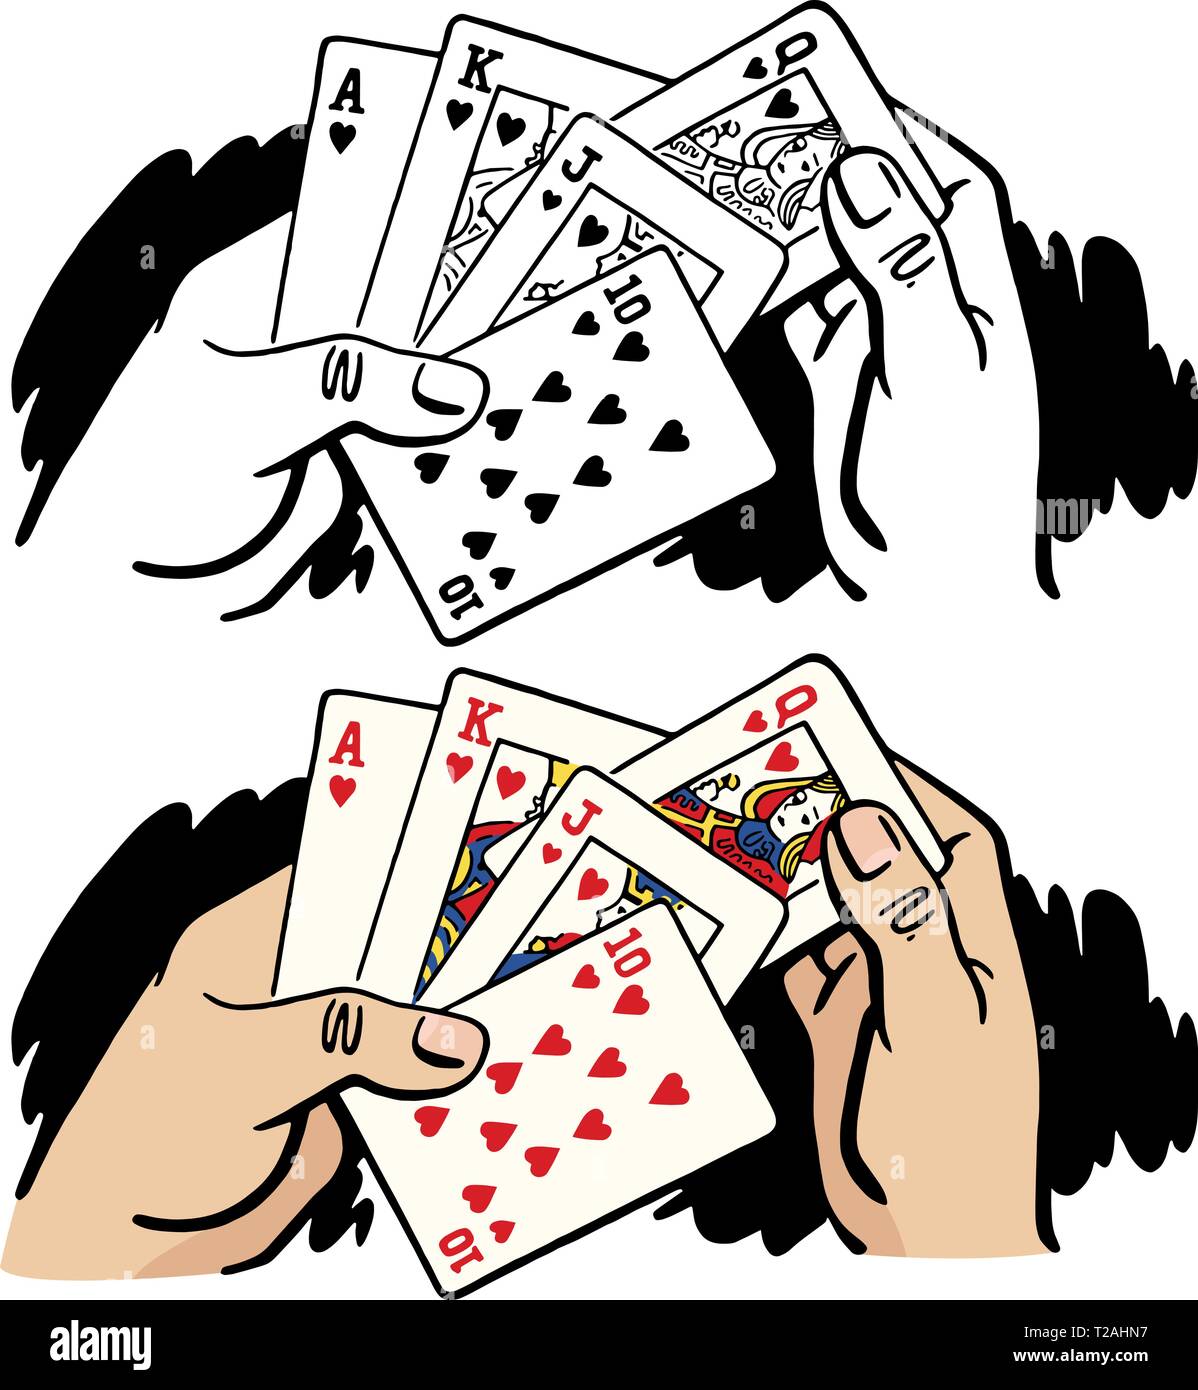 Une paire de mains tenant un Royal Flush gagnante main de poker. Illustration de Vecteur